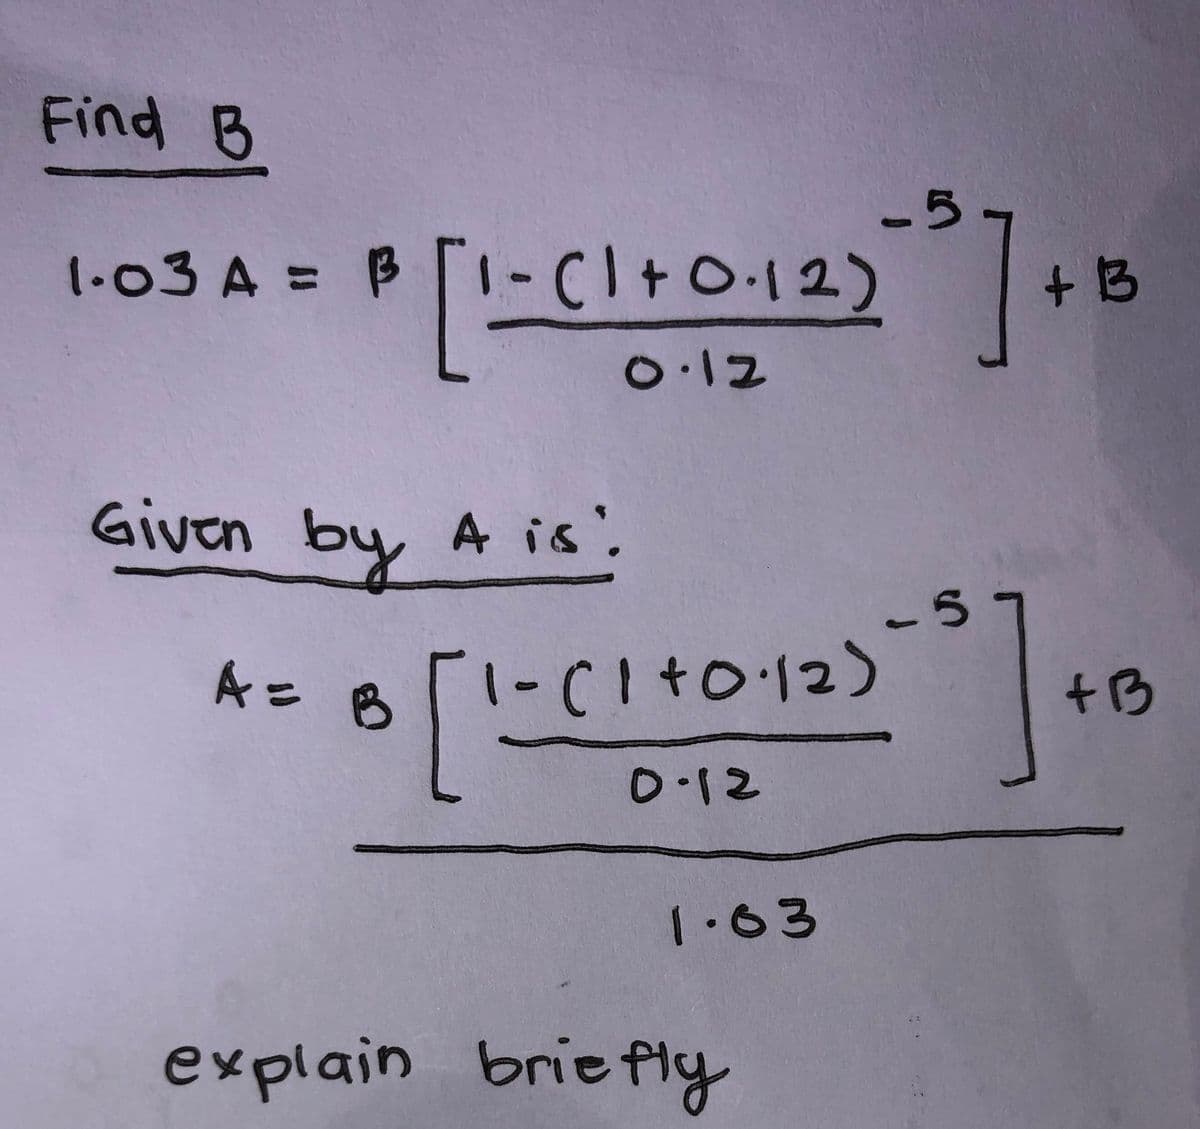 Find B
1-03 A = B1-C1+0.12)
-5
- (1+0·12) ²0 ] + 13
0.12
Given by A is!
A = B
8 [1-(1 +0·12)
0.12
1.63
-5
- 5] +
explain briefly
+B